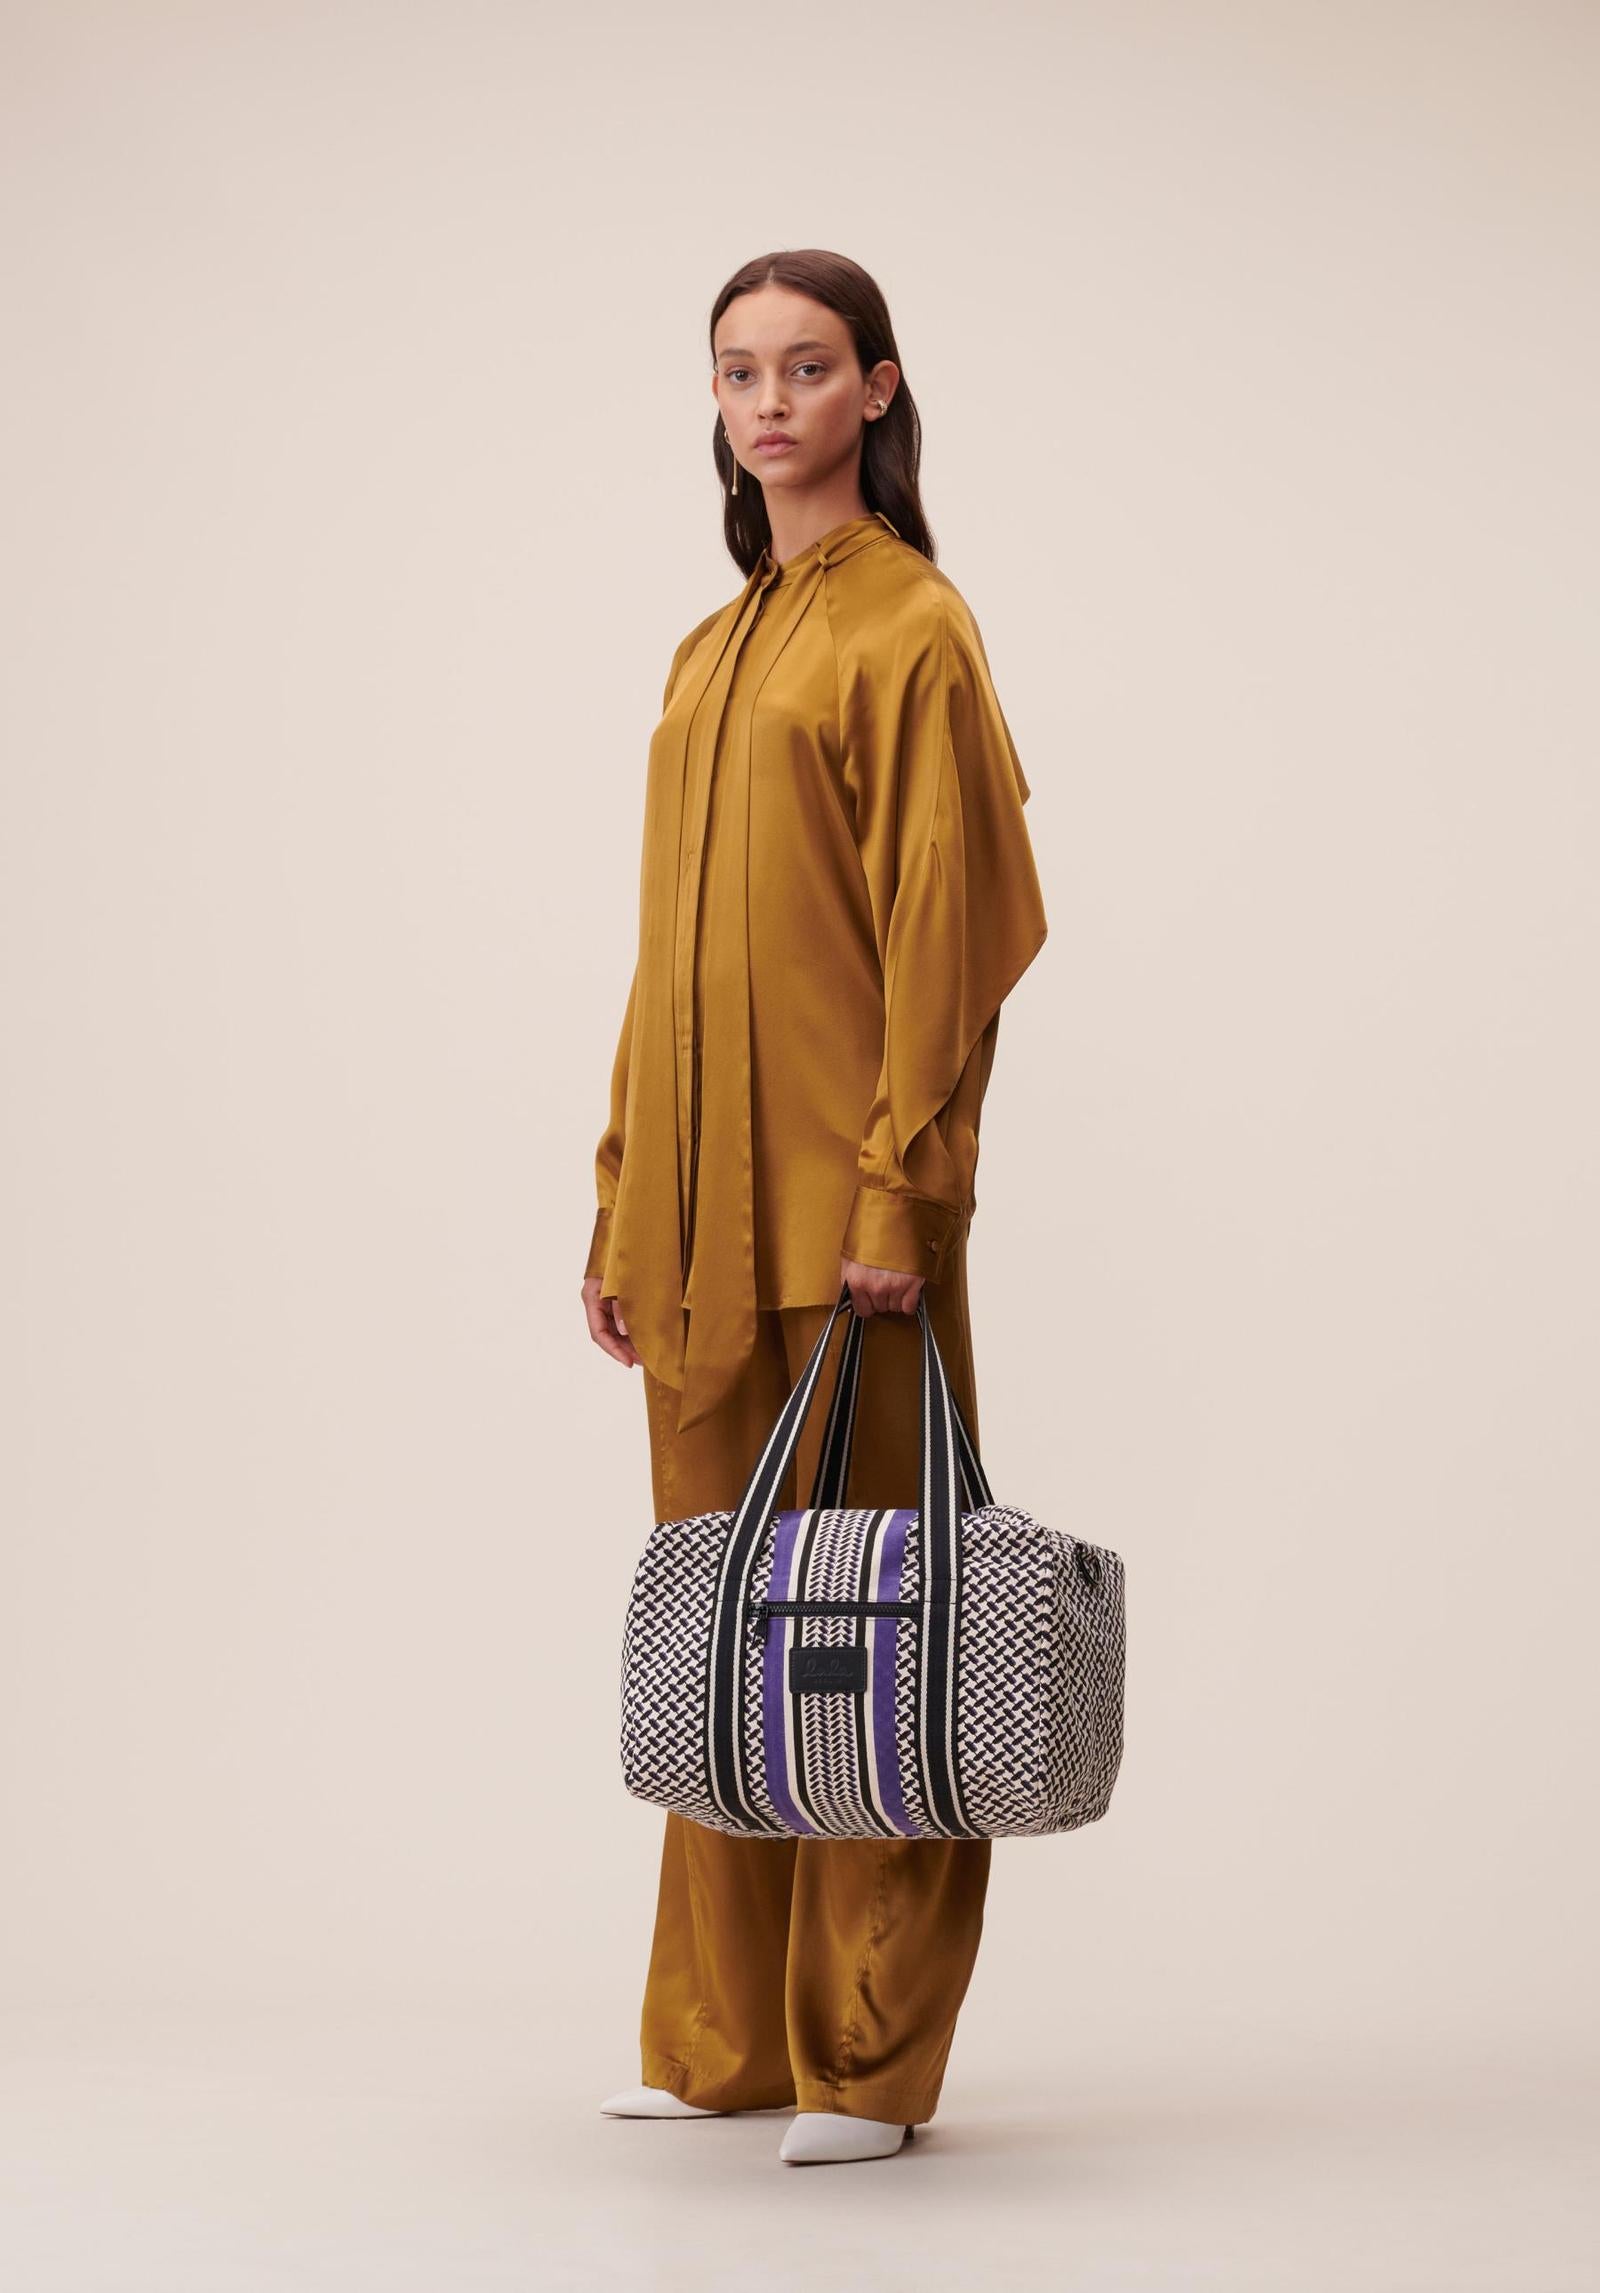 Big Bag Muriel Colored | LALA BERLIN